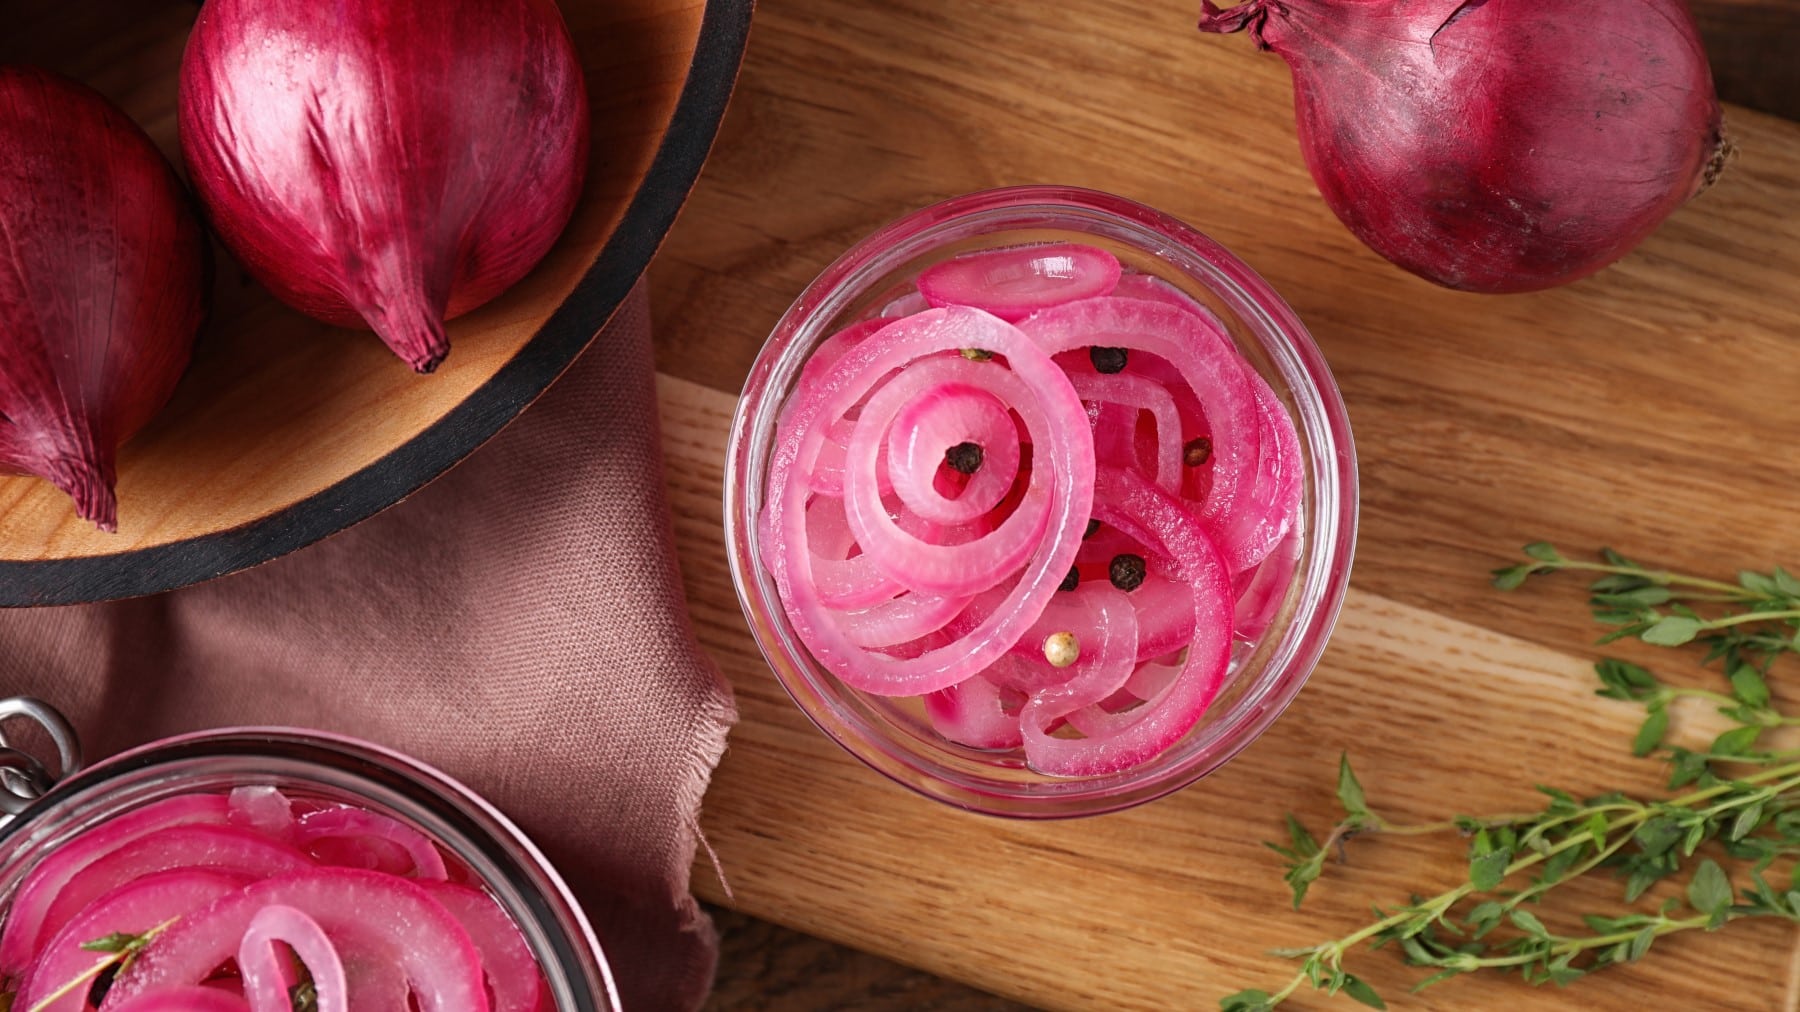 Pickled Red onions in einem Glas neben ganzen roten Zwiebeln und Thymianzweigen vor Holzhintergrund.